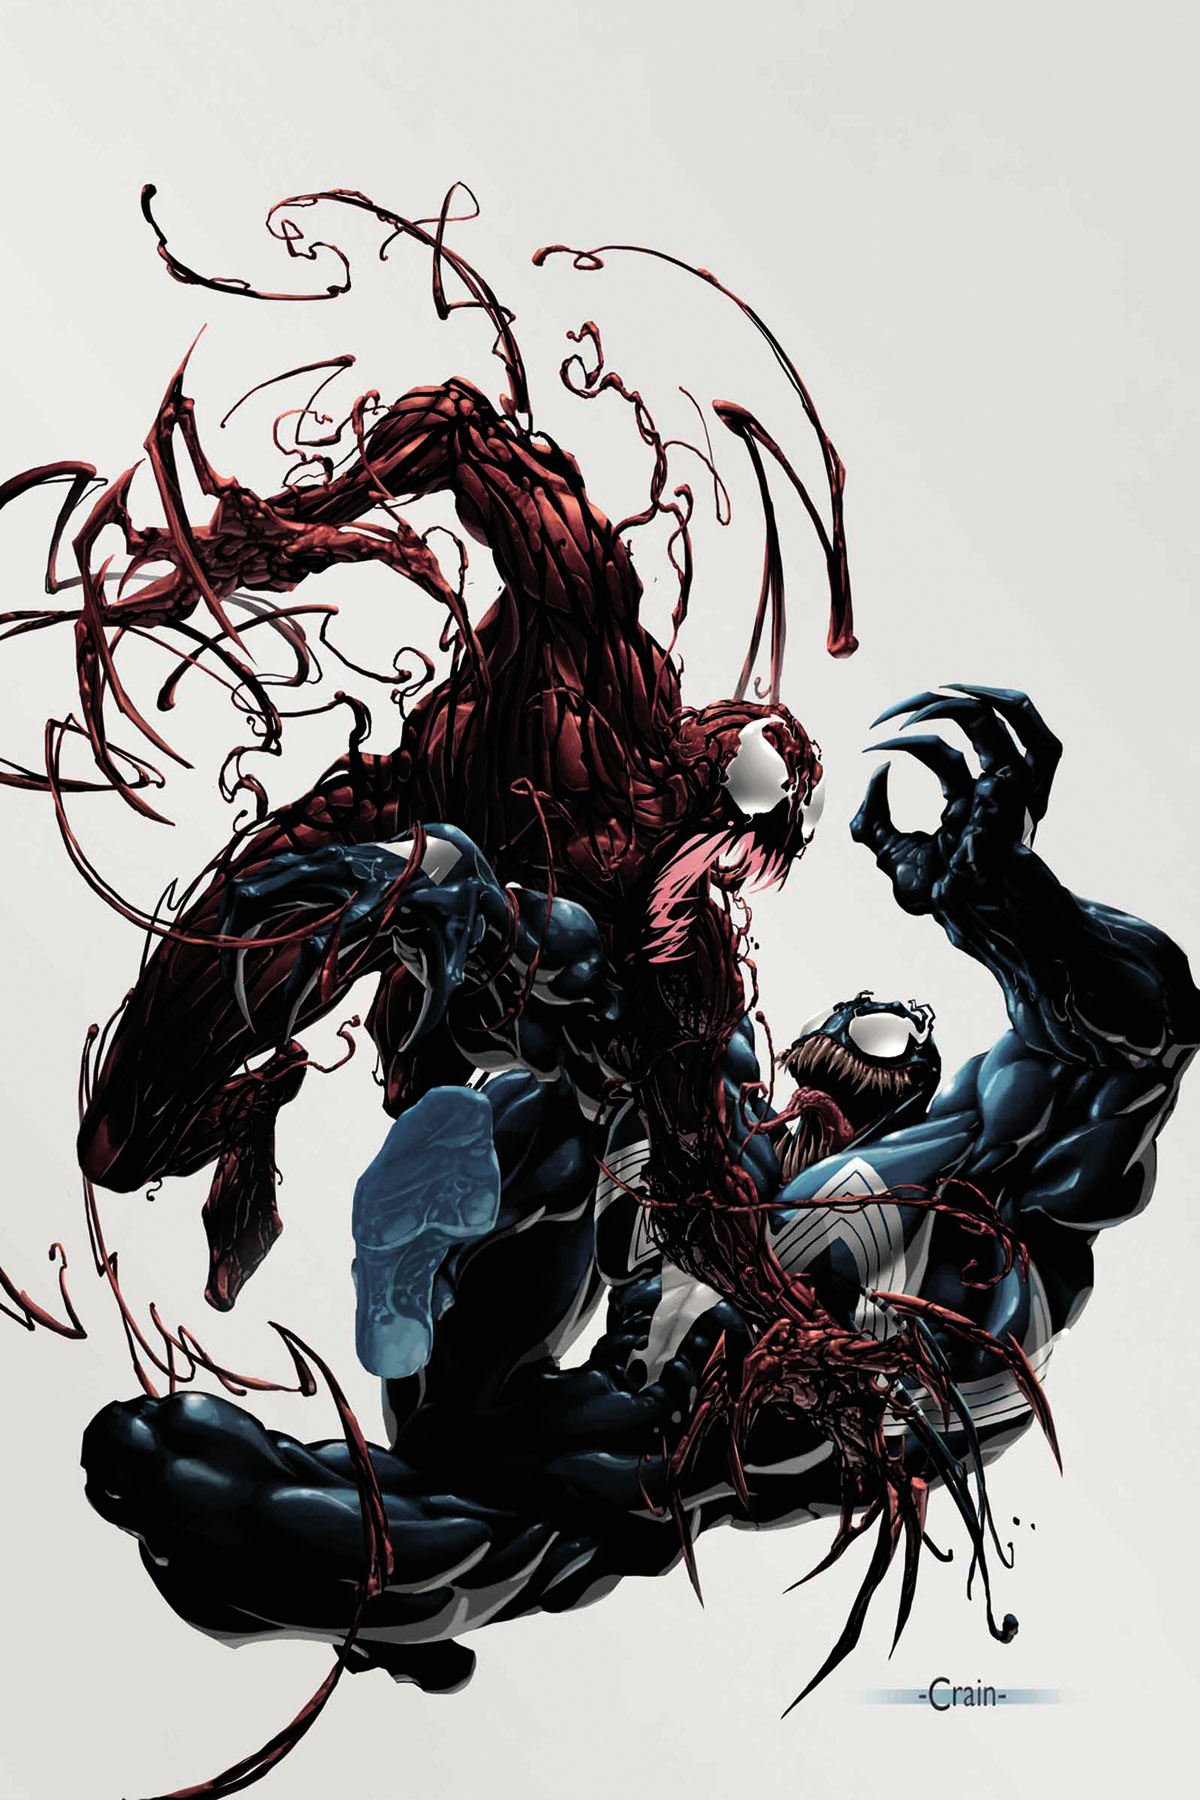 spiderman vs carnage drawings